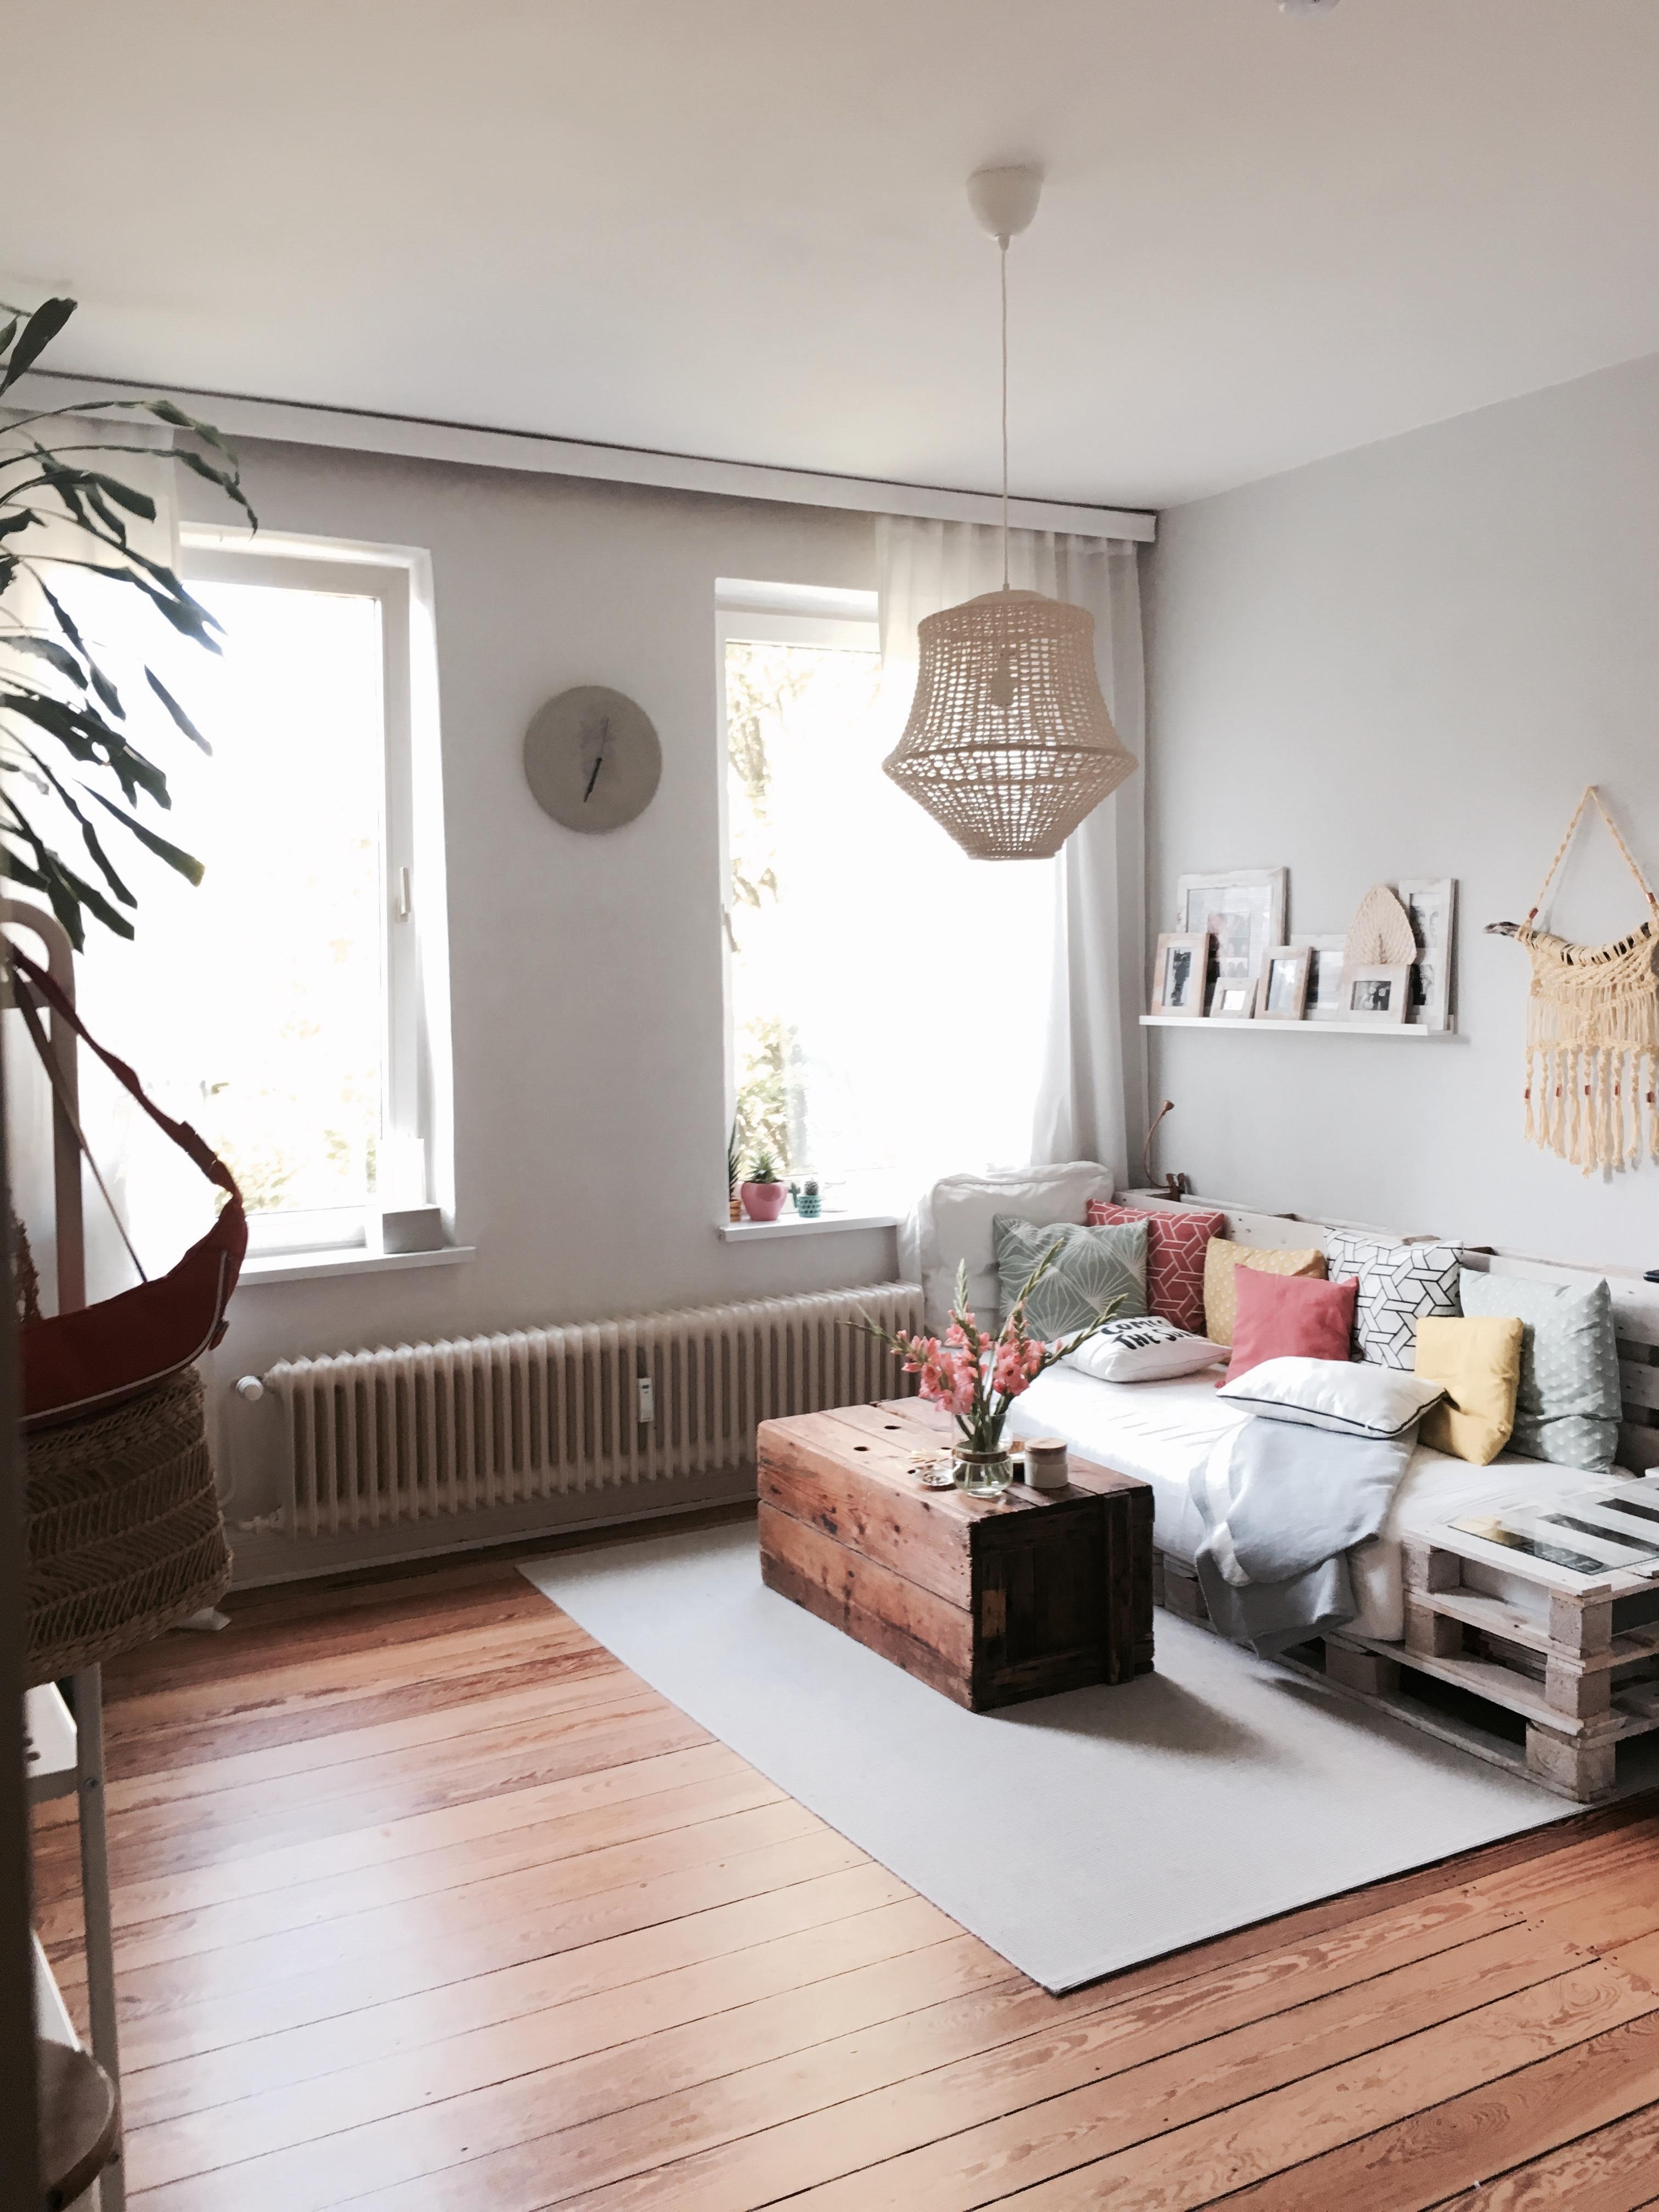 🌸🌈💕
#couchstyle #farbenfroh #summer #livingroom #interior #urlaubzuhause